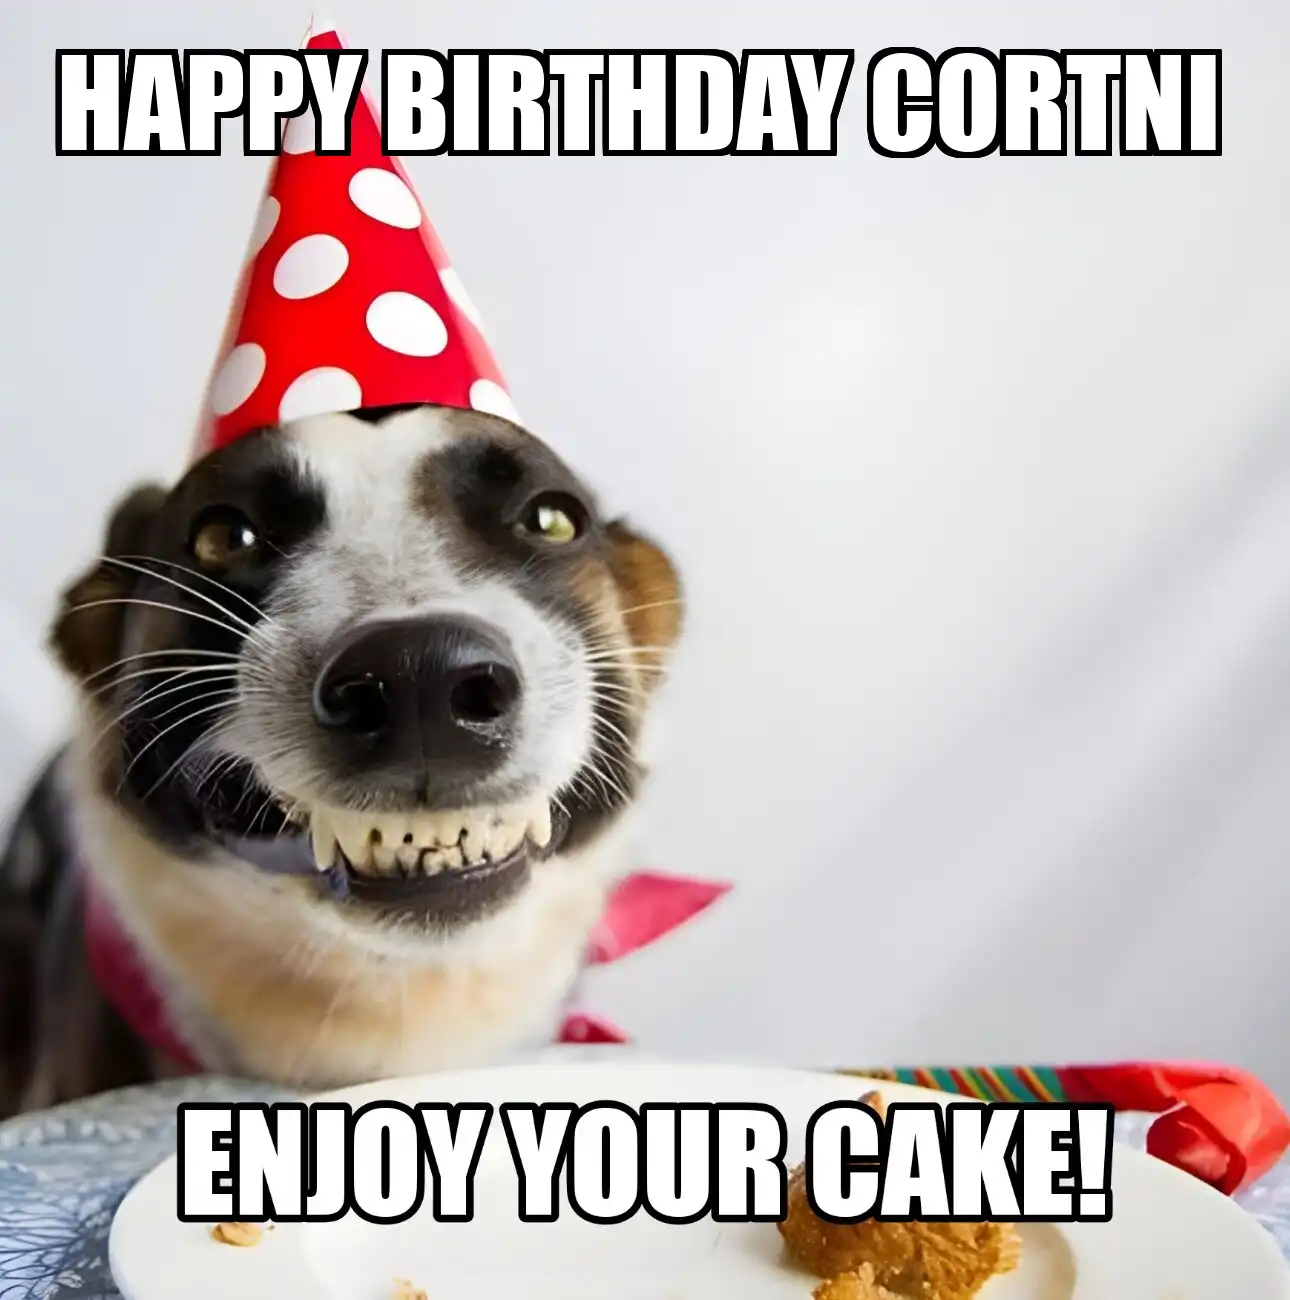 Happy Birthday Cortni Enjoy Your Cake Dog Meme